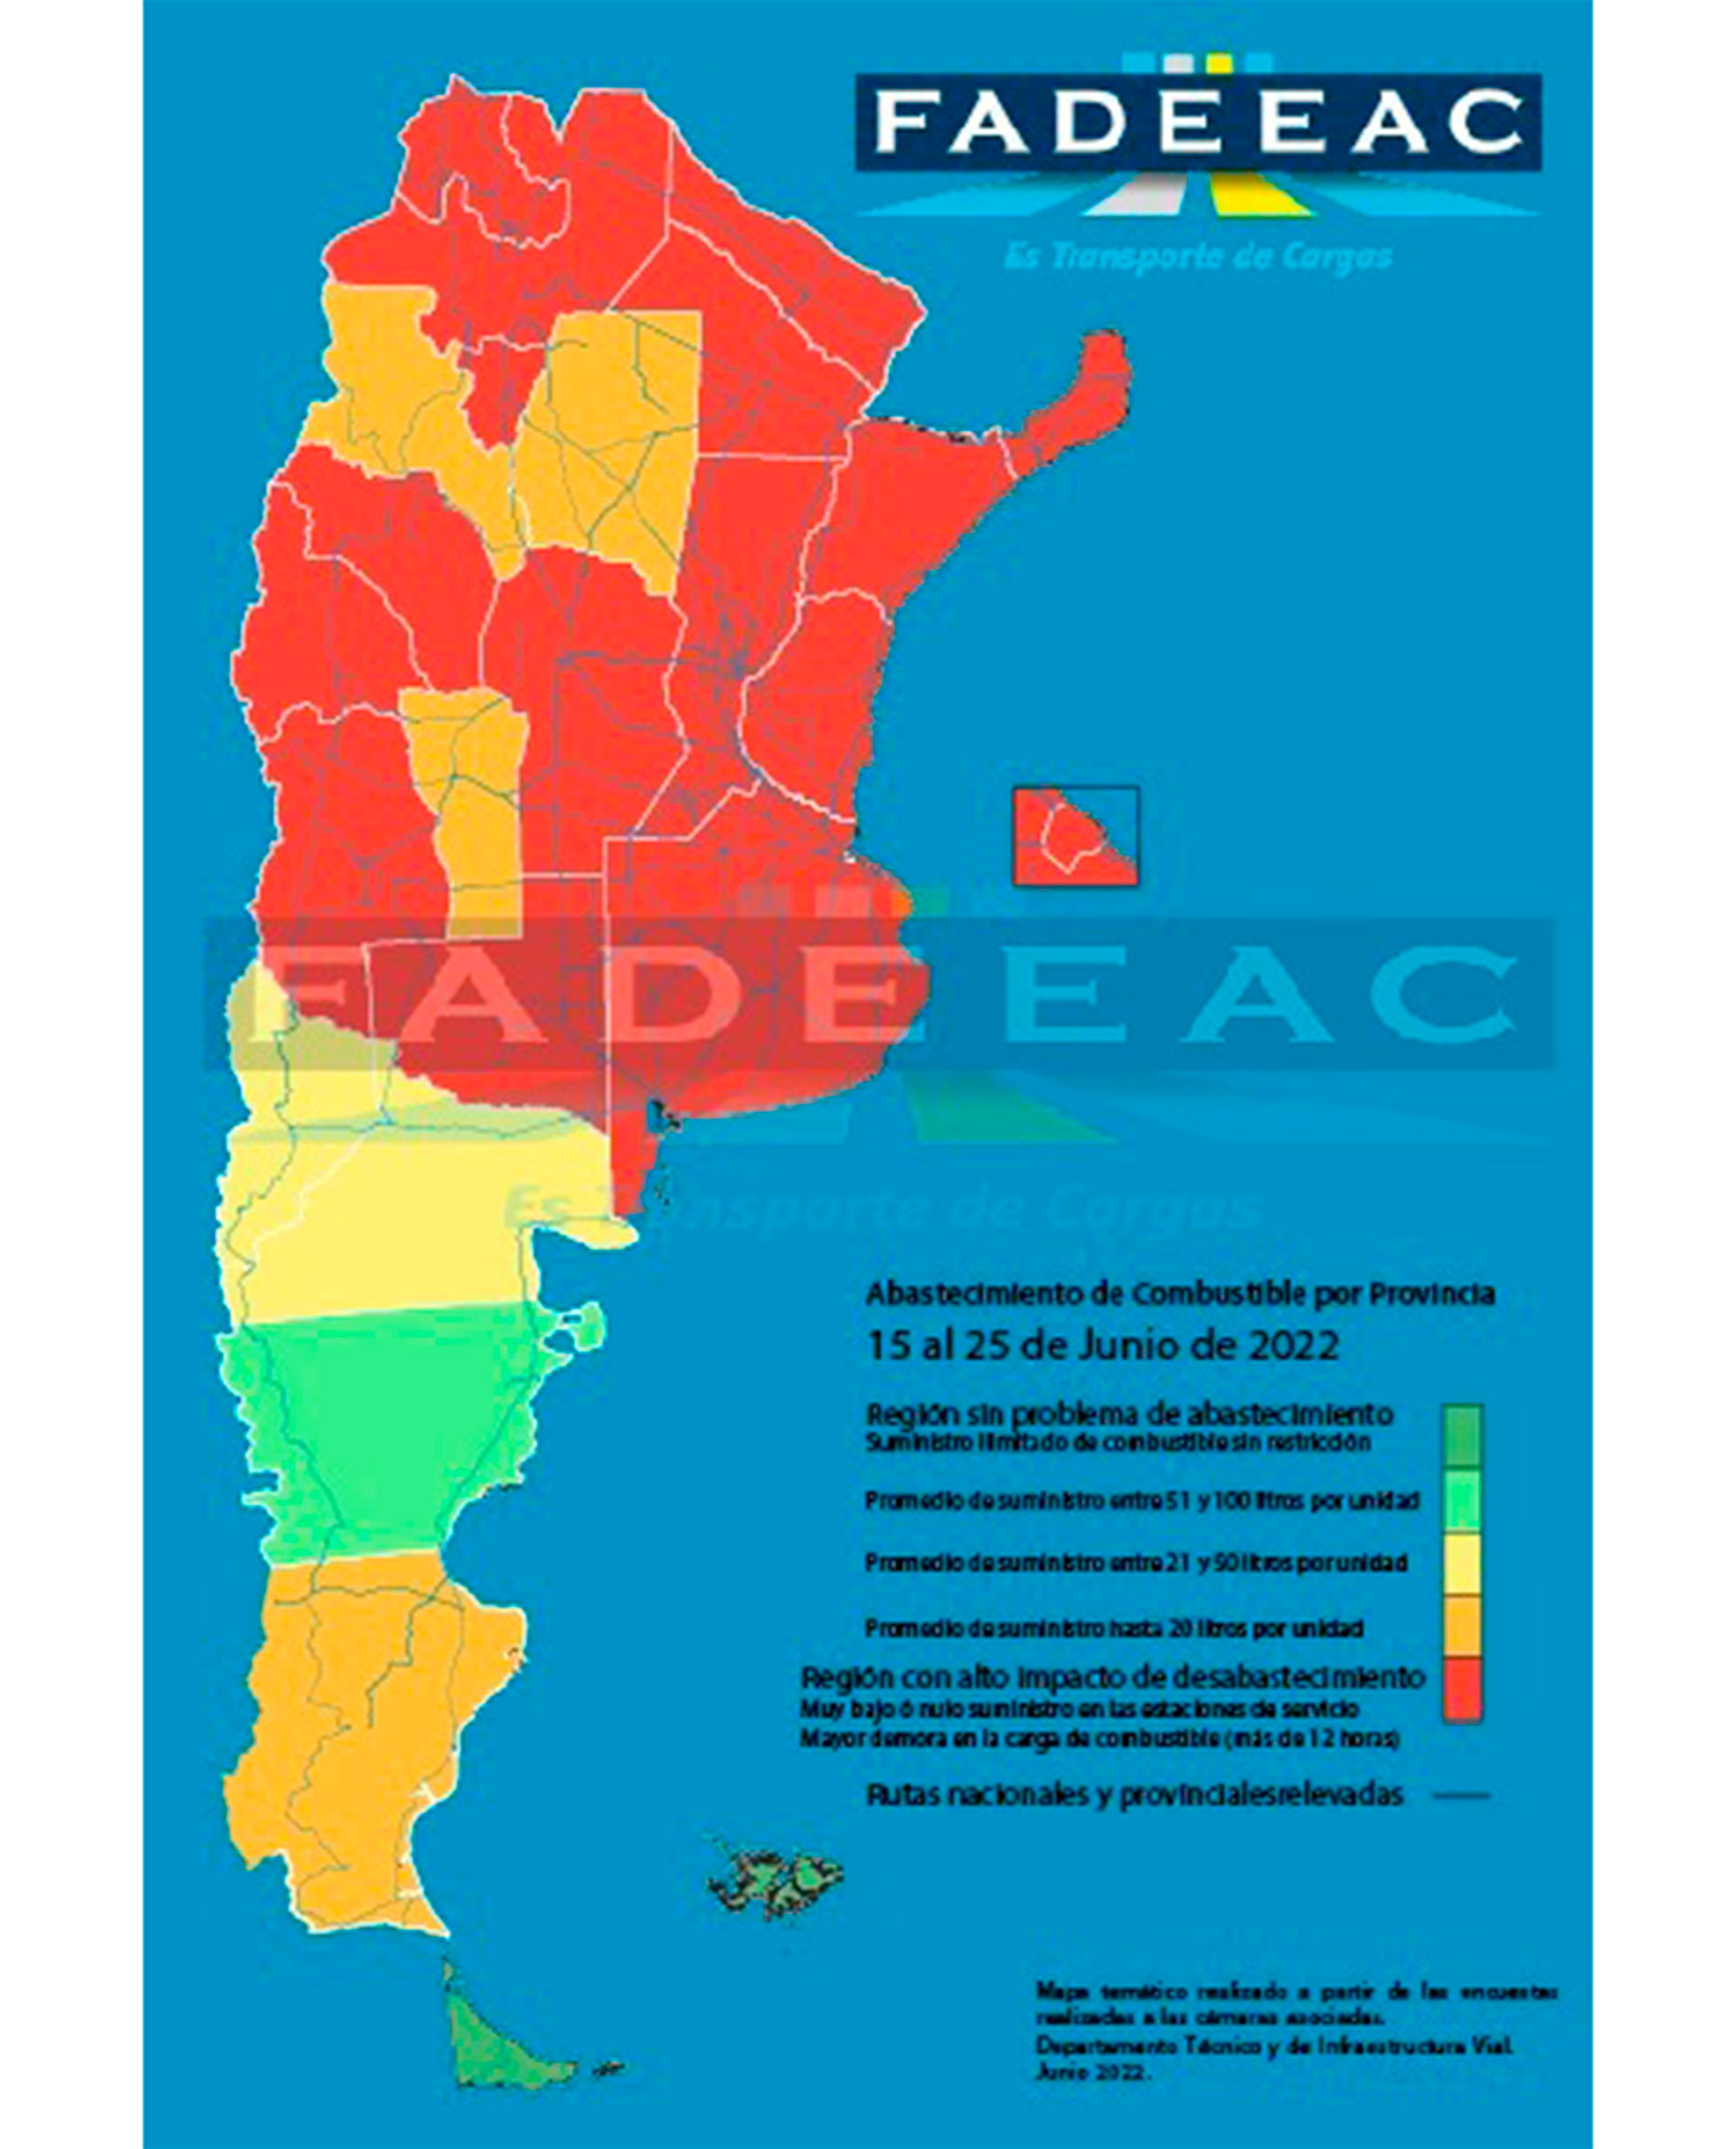 Mapa de gasoil, con las provincias más afectadas por la problemática. (FADEEAC)